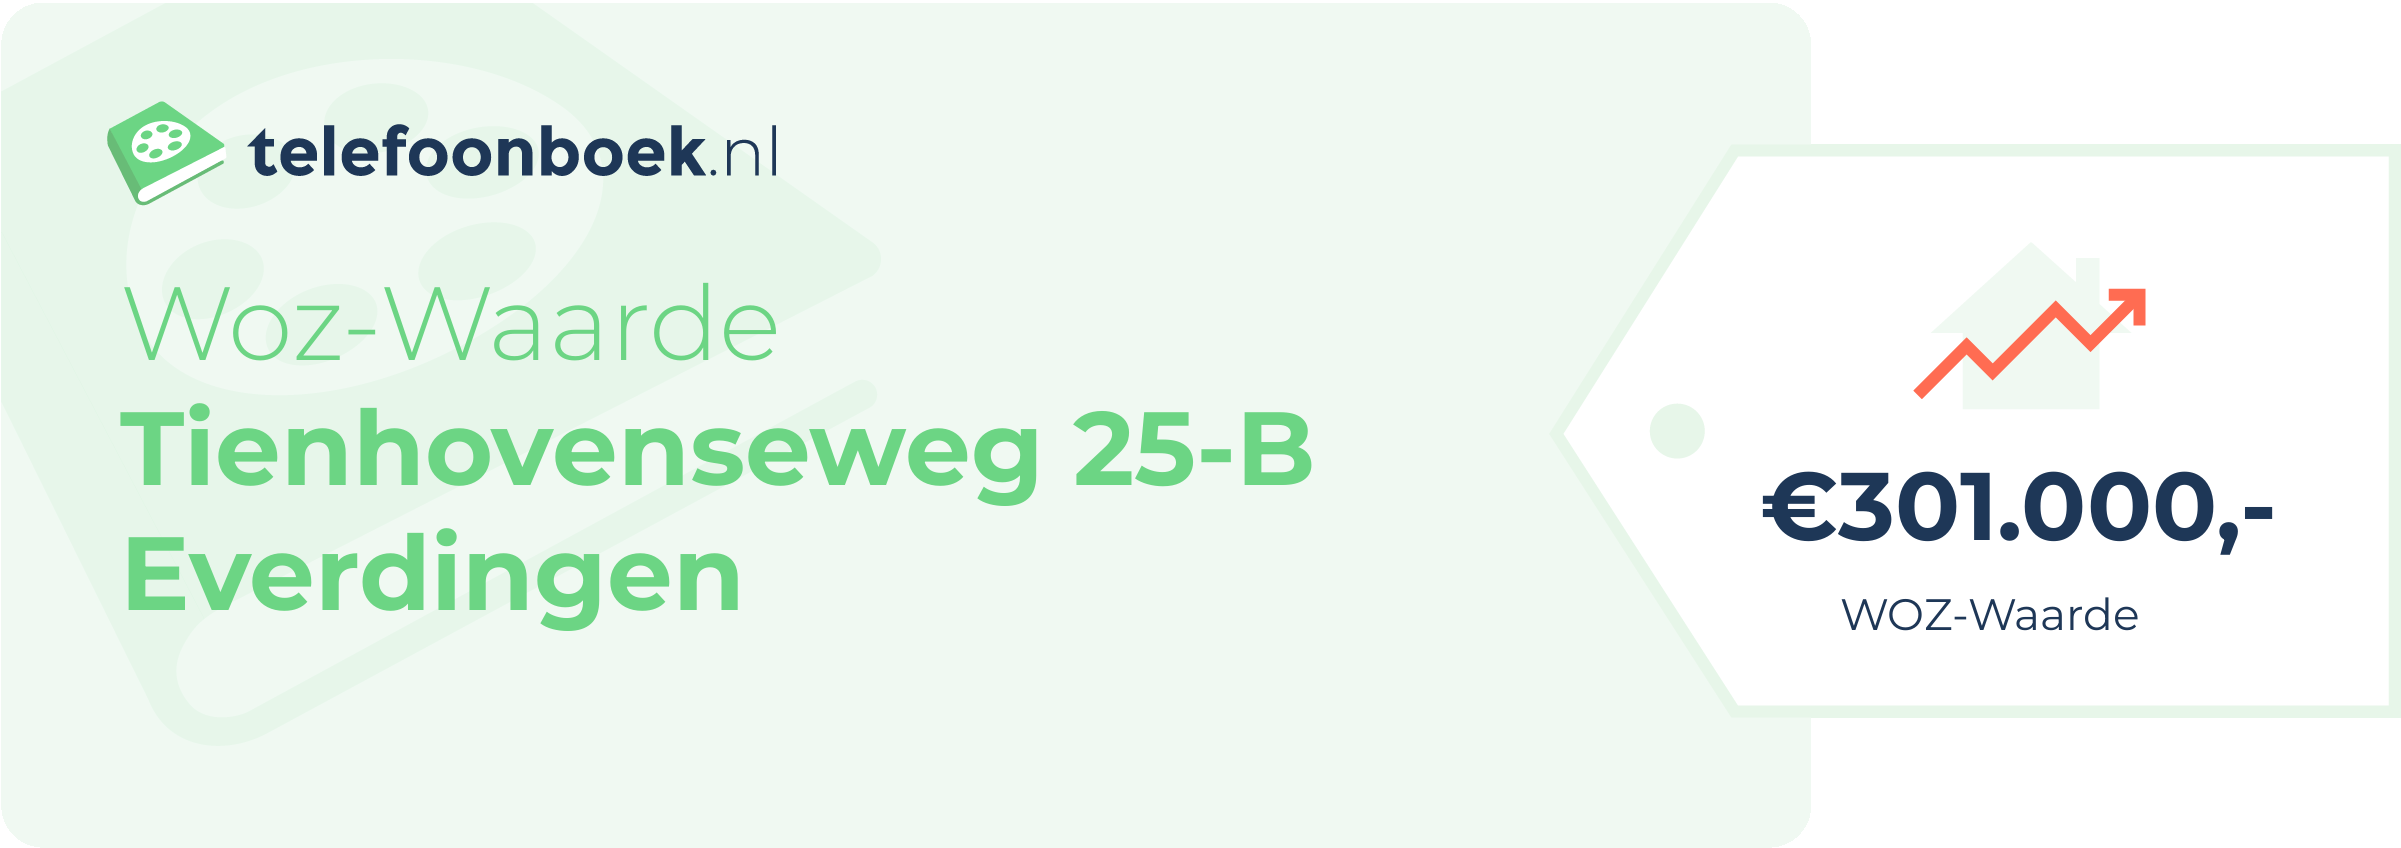 WOZ-waarde Tienhovenseweg 25-B Everdingen